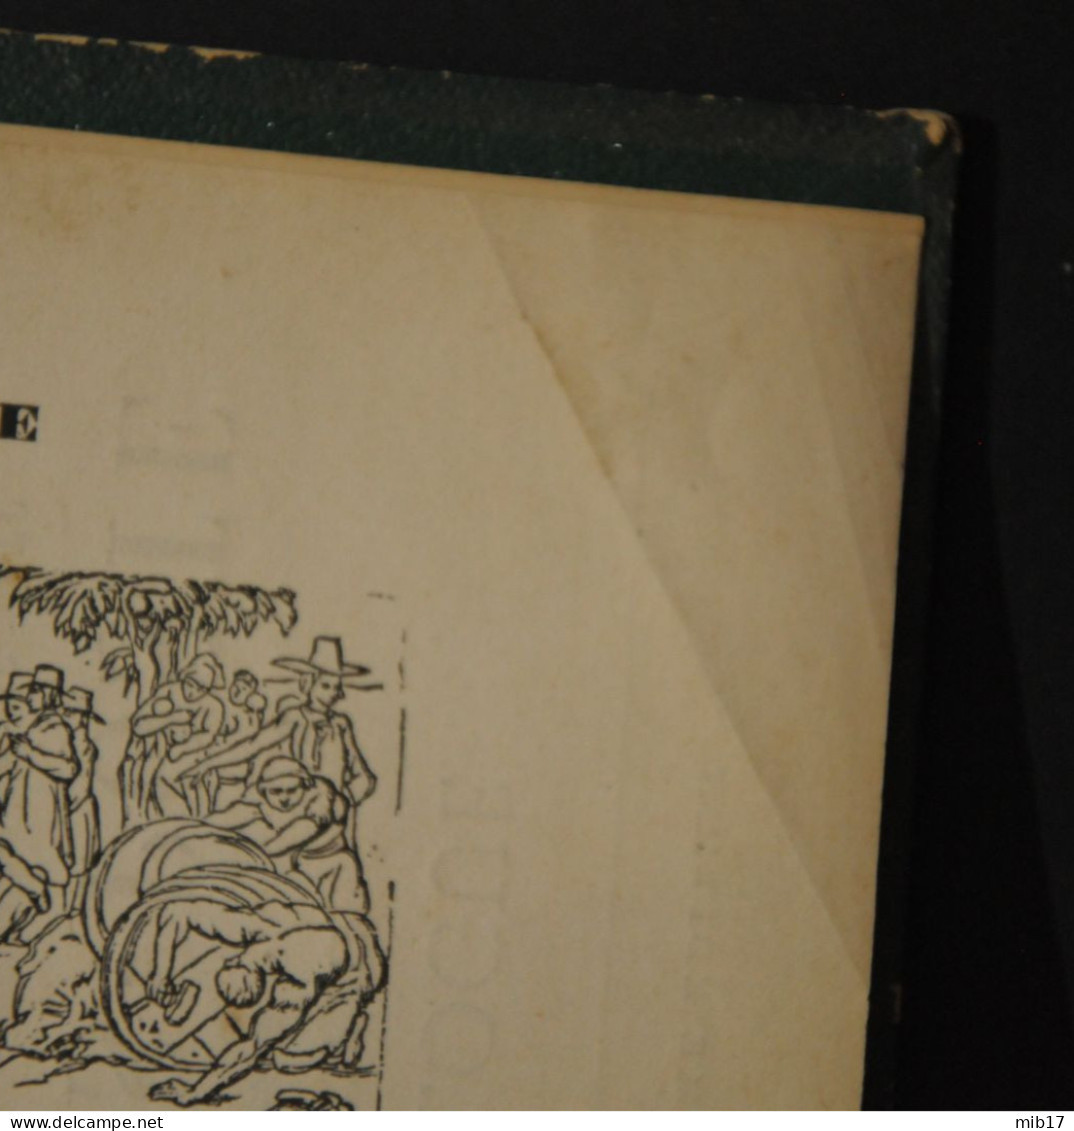 Catalogue Descriptif De Tous Les Timbres Poste Parus Depuis Leur Invention Jusqu'en 1881 Par Arthur MAURY - Auktionskataloge